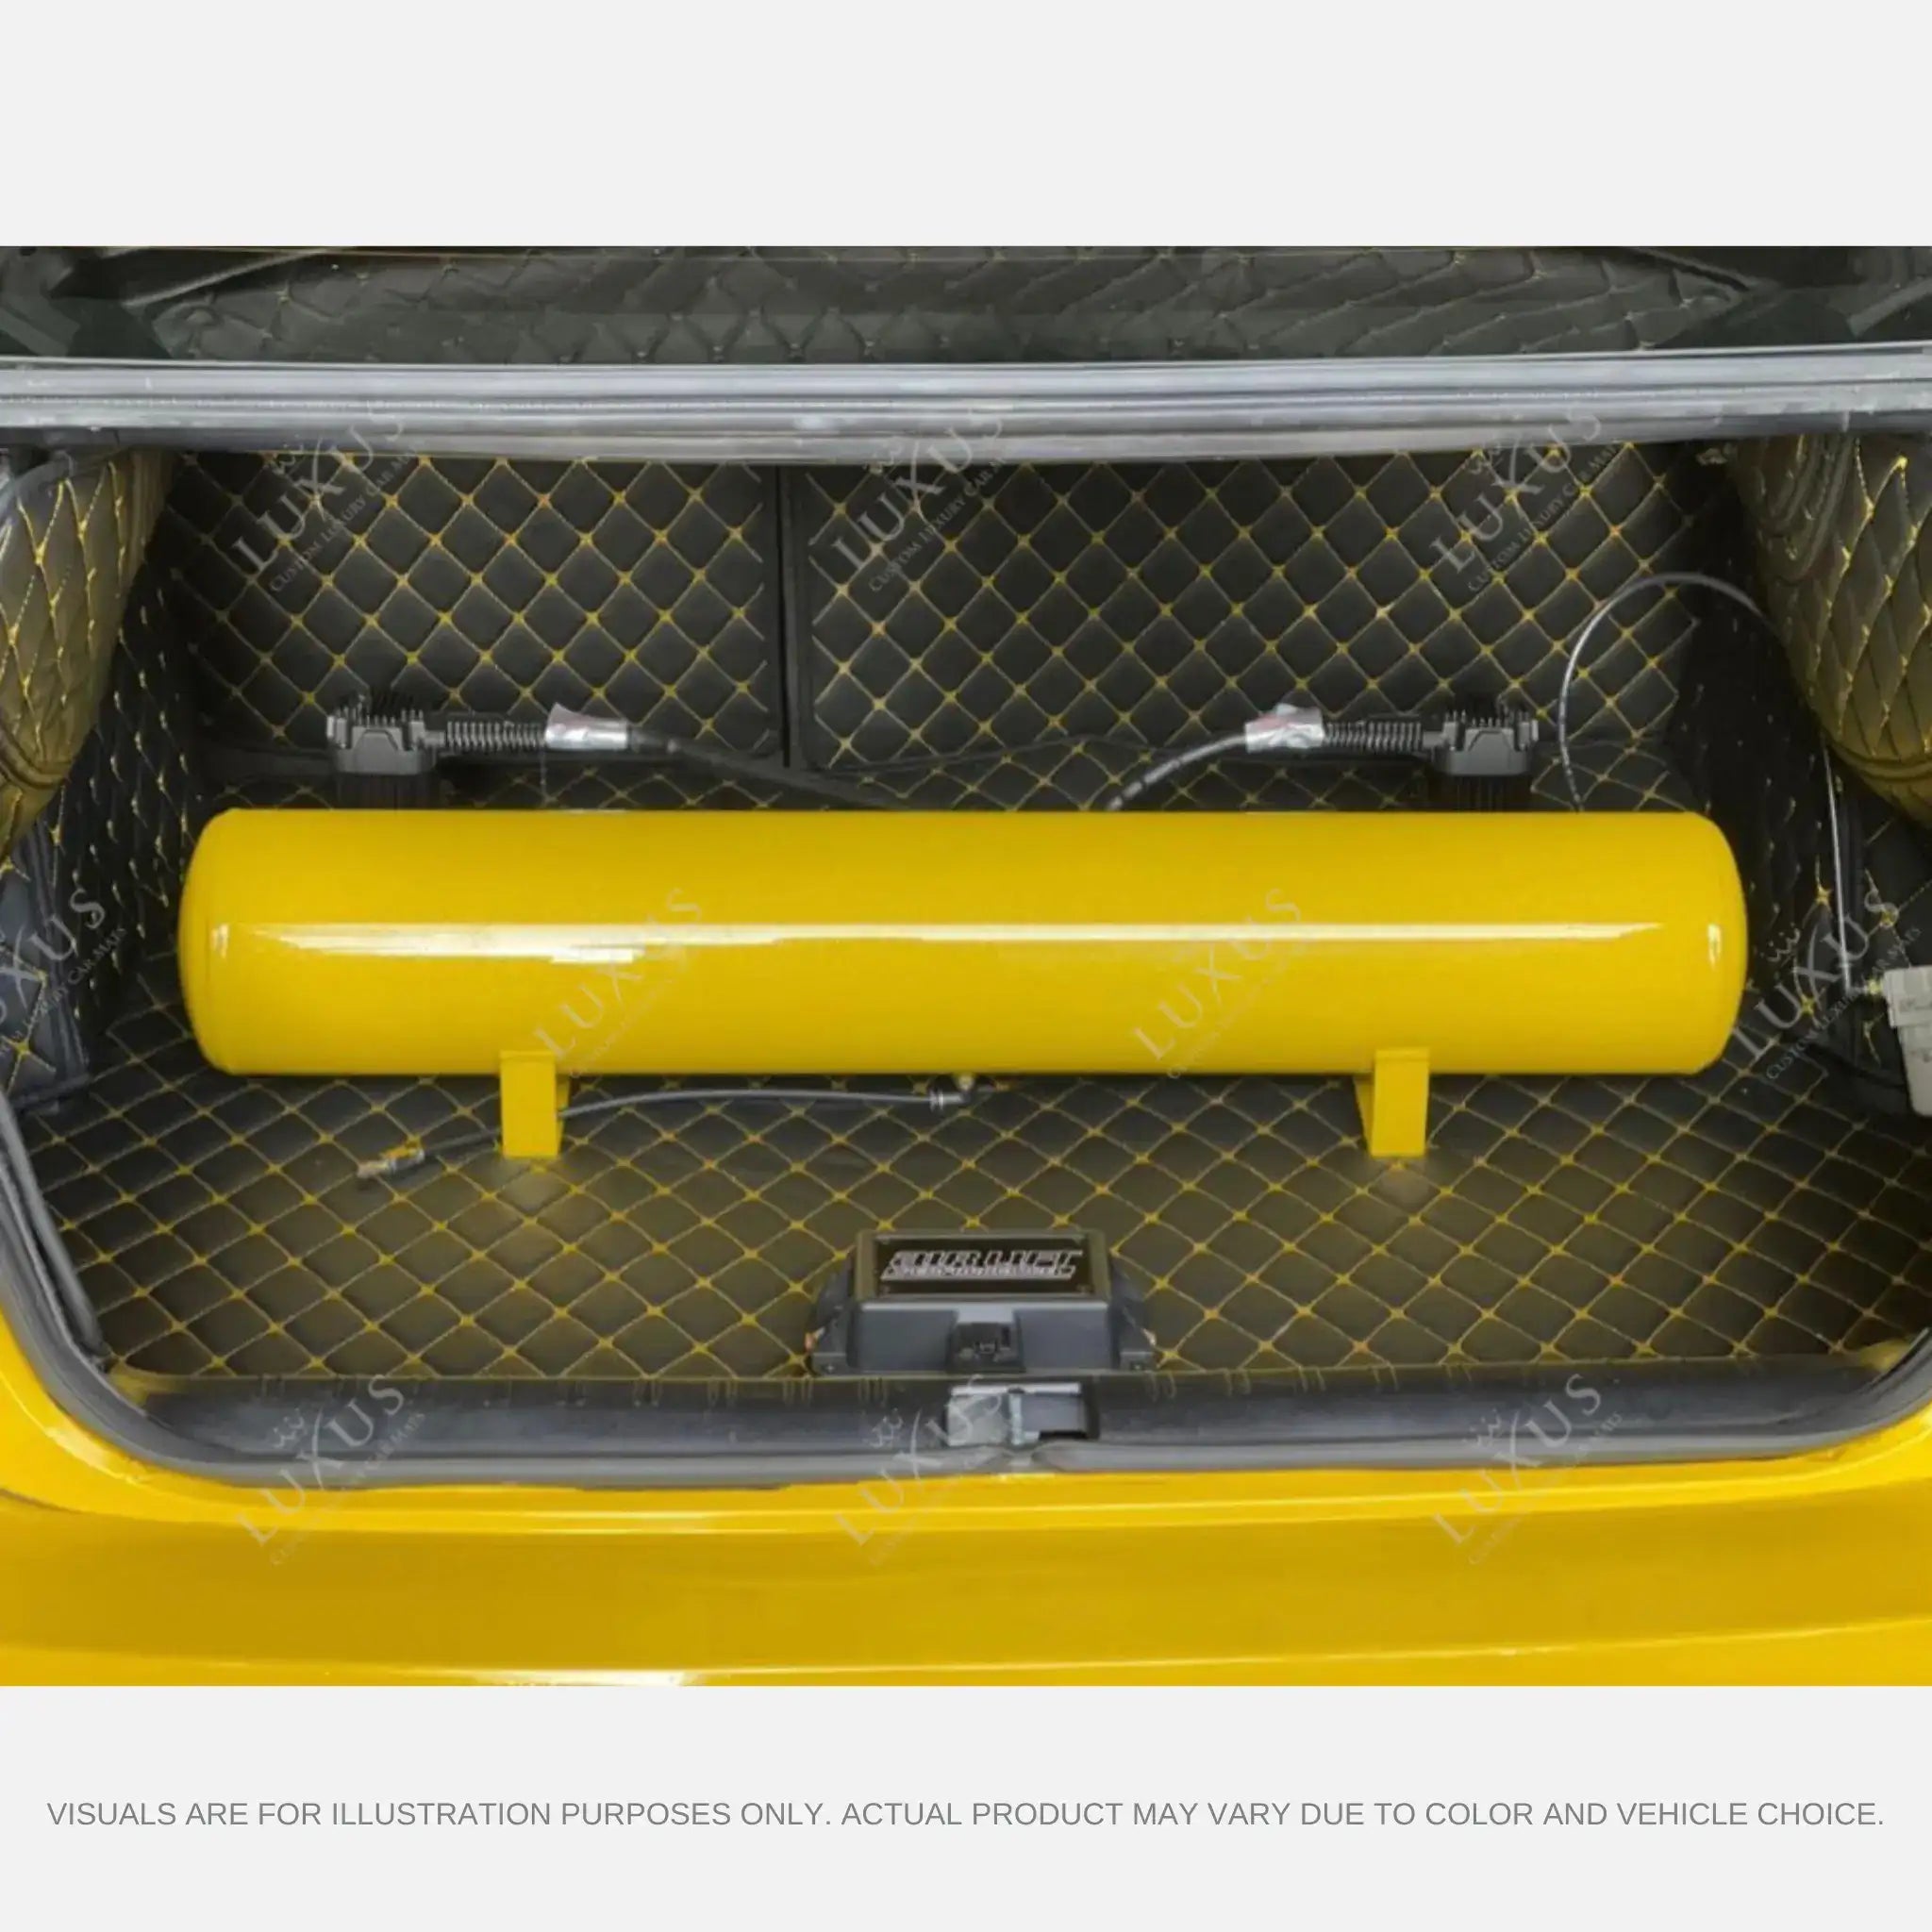 Luxus Car Mats™ - Alfombrilla para maletero/maletero de cuero de lujo con costuras en 3D en blanco y negro